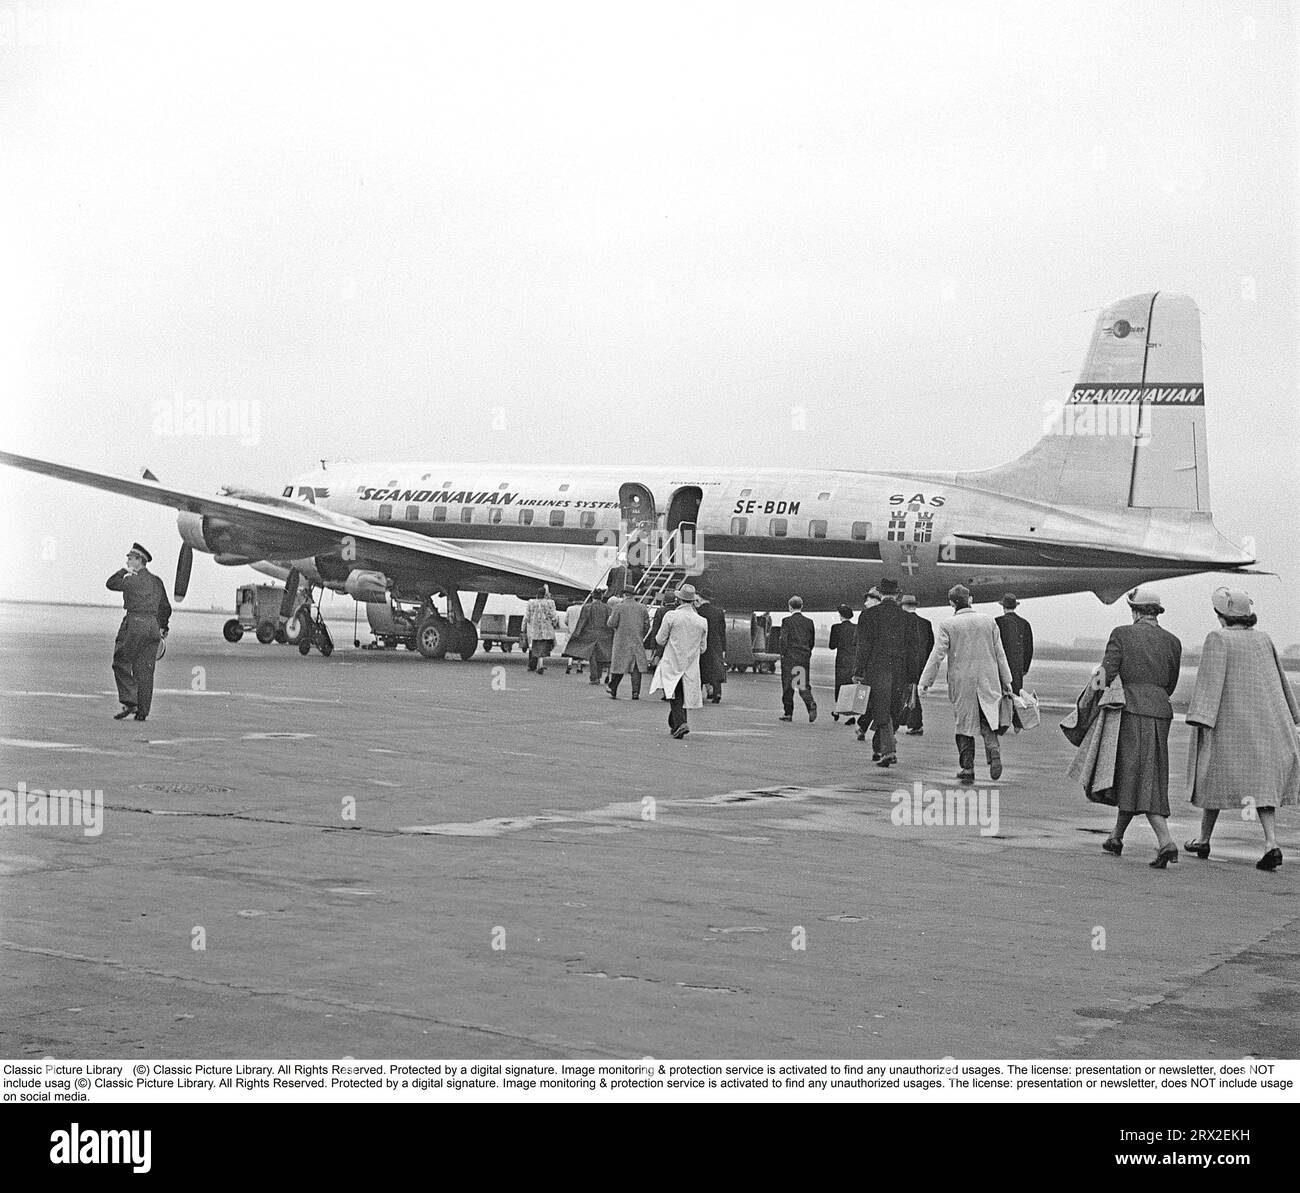 Passagers aériens dans les années 1950 Un avion de passagers quadrimoteur de type se-BDM Douglas DC-6-477B Cloudmaster de la compagnie aérienne scandinave SAS est aligné dans un aéroport suédois et les passagers aériens ont commencé à monter les escaliers et à monter à bord de l'avion. Le temps est un peu gris et terne et on peut spéculer que les Suédois qui ont commencé à voyager sur des voyages charter vers le sud de l'Europe peuvent être sur leur chemin vers où il fait chaud et ensoleillé et ainsi éviter le temps morne. Suède 1952. Kristoffersson réf. BG60-4 Banque D'Images